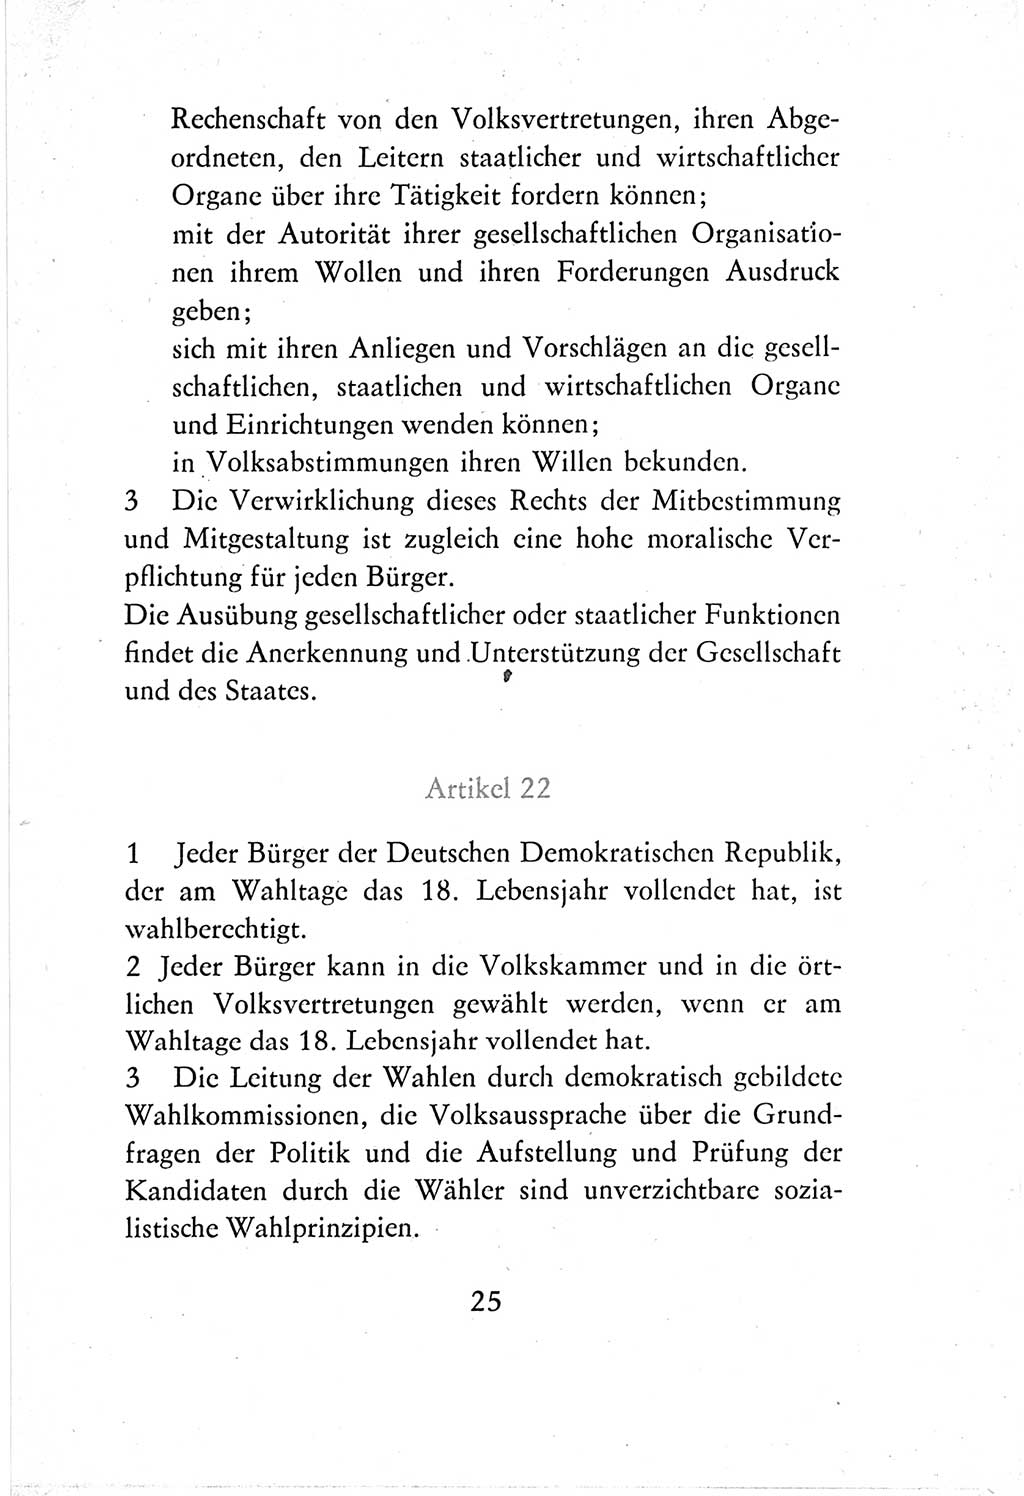 Verfassung der Deutschen Demokratischen Republik (DDR) vom 7. Oktober 1974, Seite 25 (Verf. DDR 1974, S. 25)